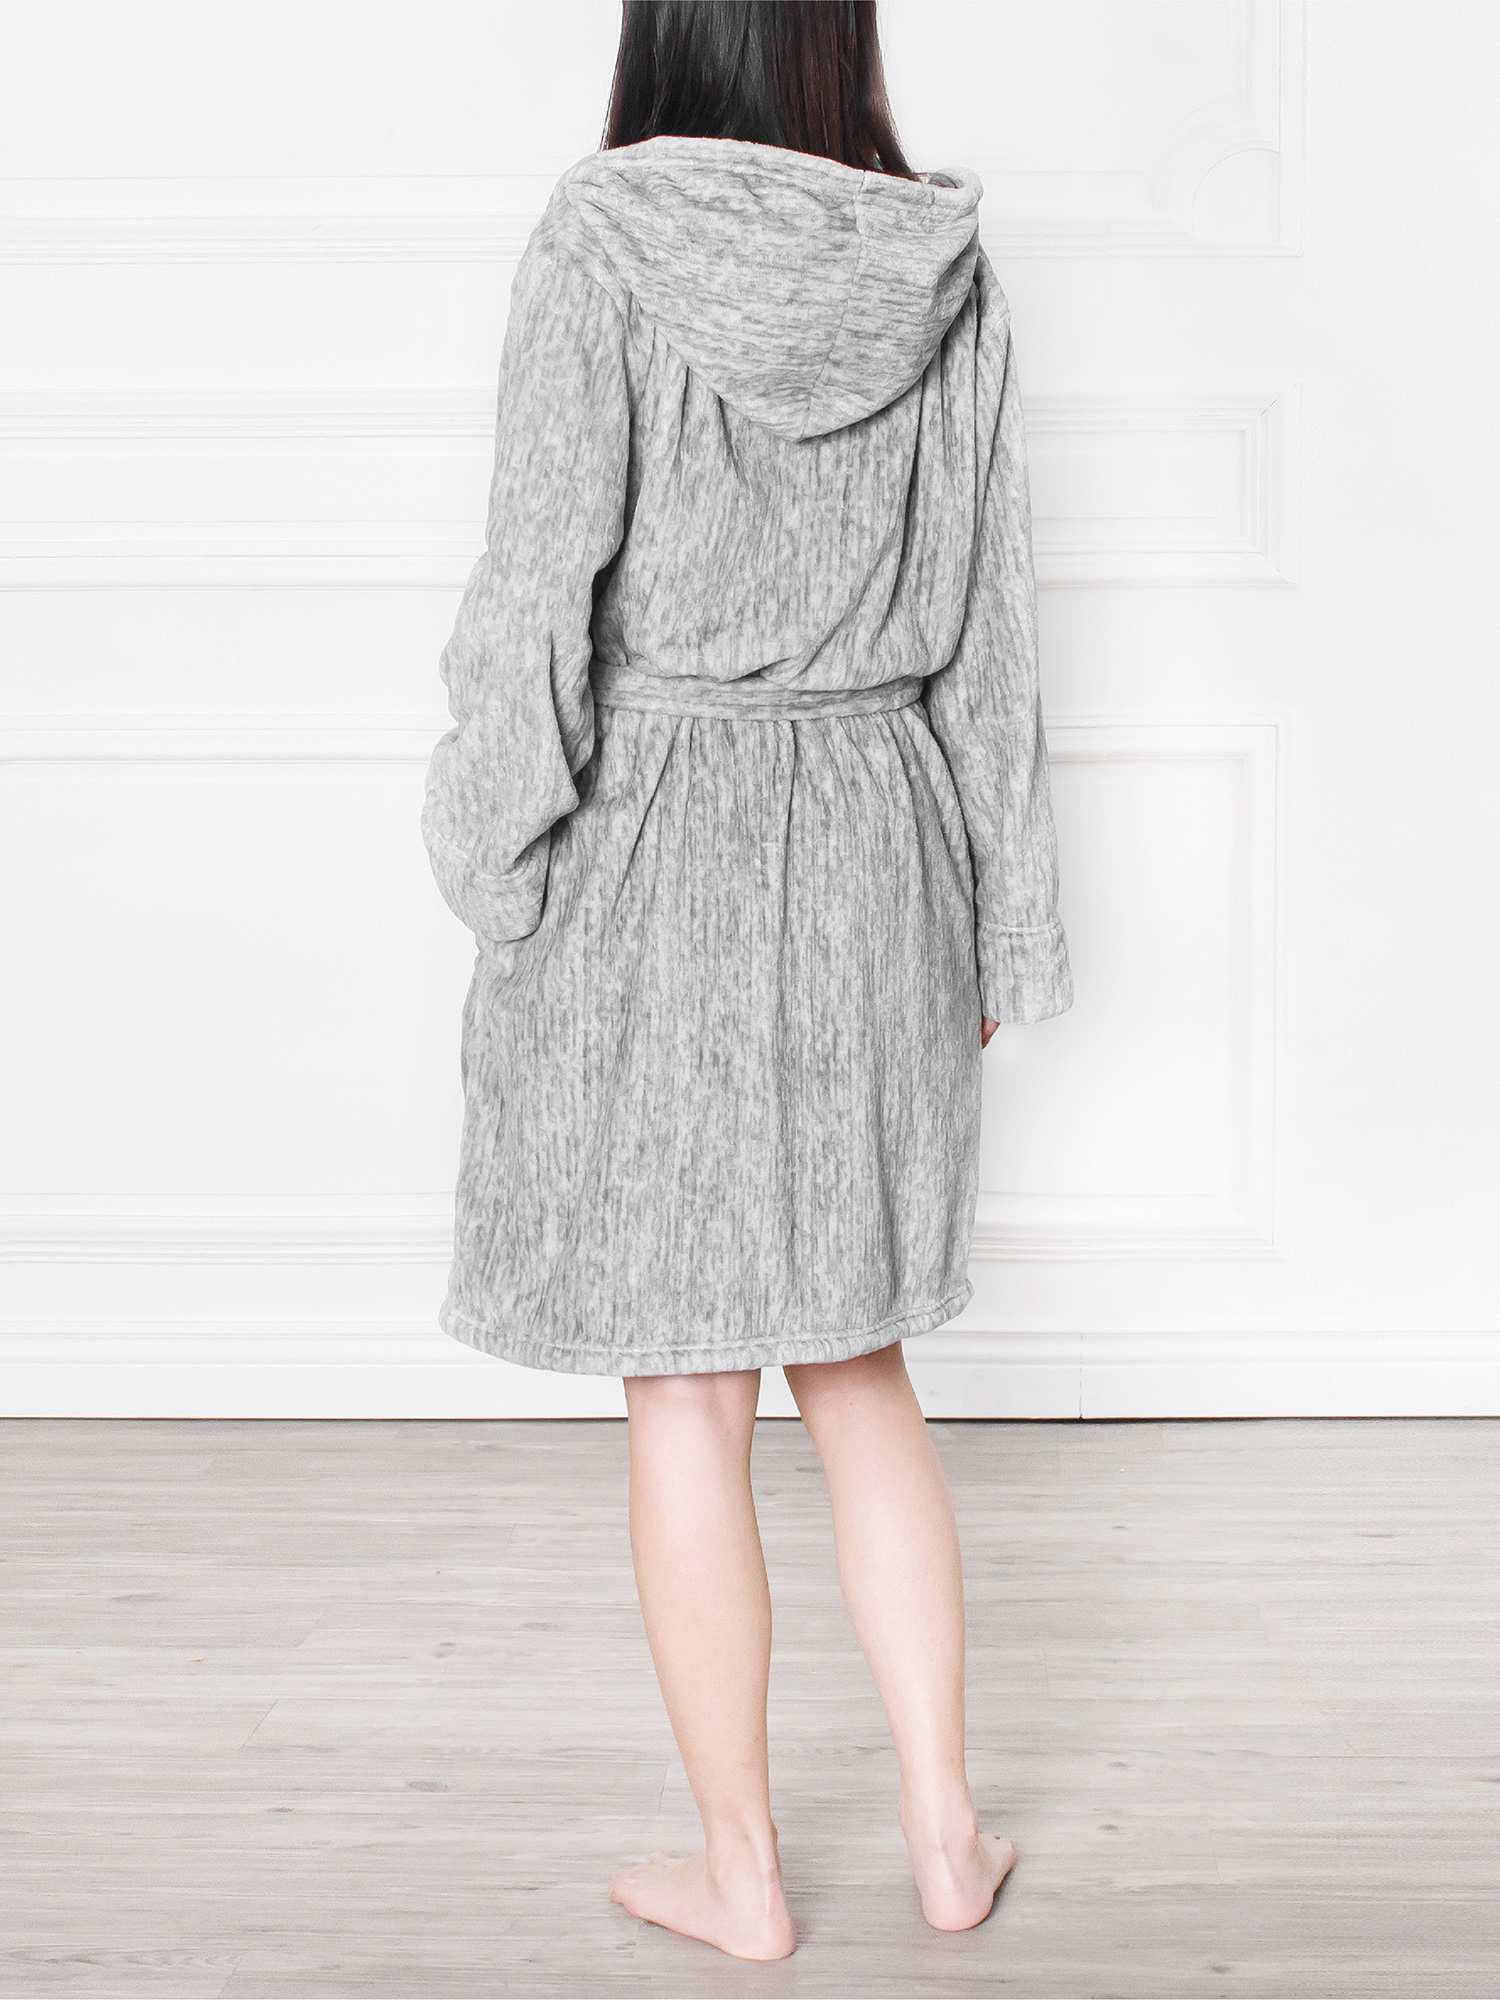 legemliggøre udlejeren pålidelighed Women Ladies Hooded Fleece Fluffy Soft Warm Bathrobe Short Spa Robe  Microfiber | eBay